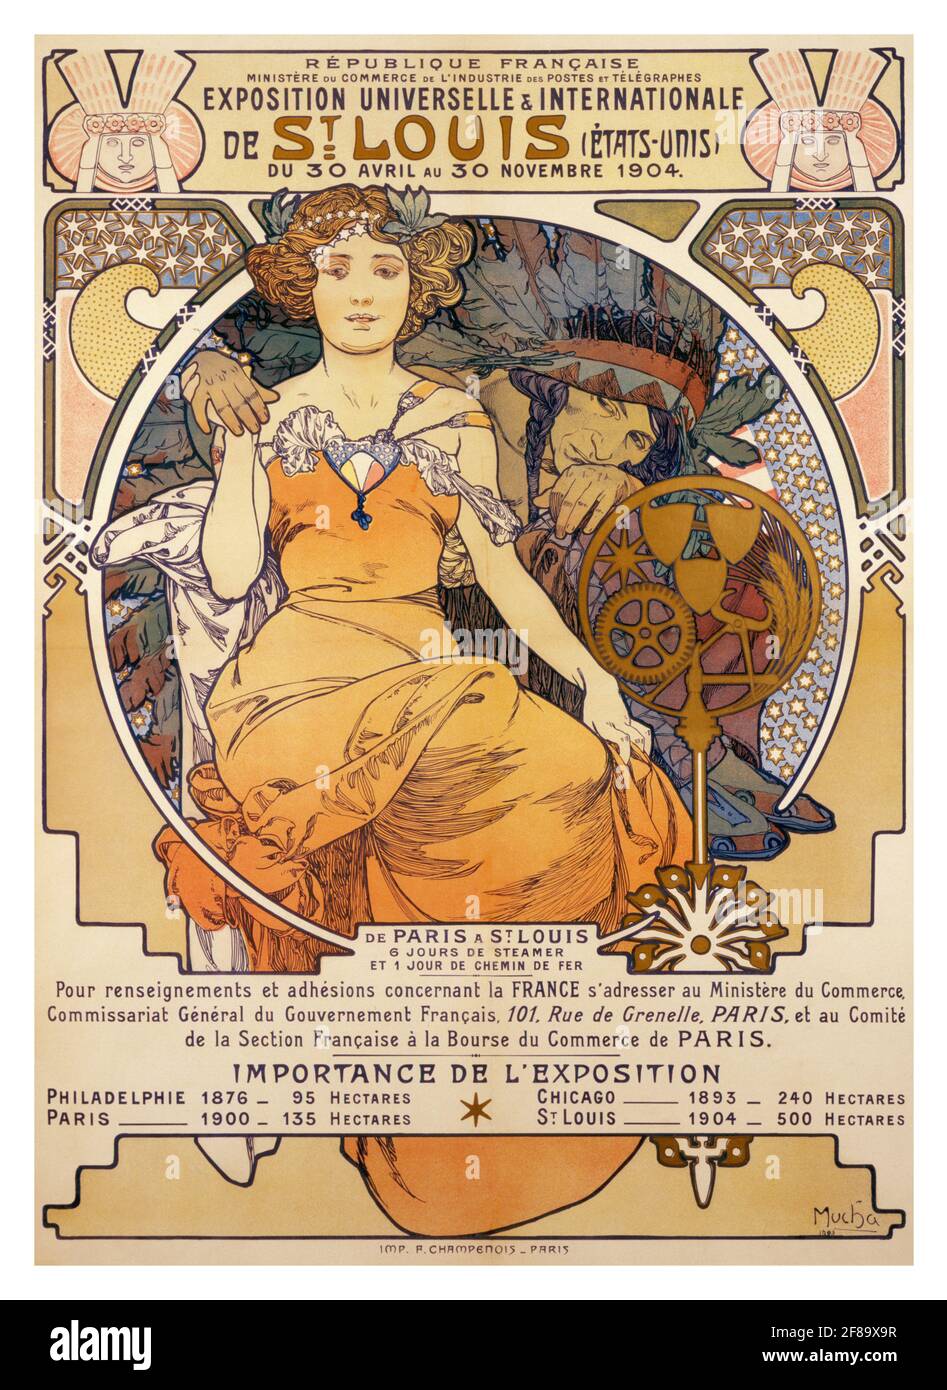 Exposición Universelles et Internationale de St. Louis (Etats Unis) du 30 Avril au 30 Novembre. (Cartel anunciando la Feria Mundial 1904). Foto de stock